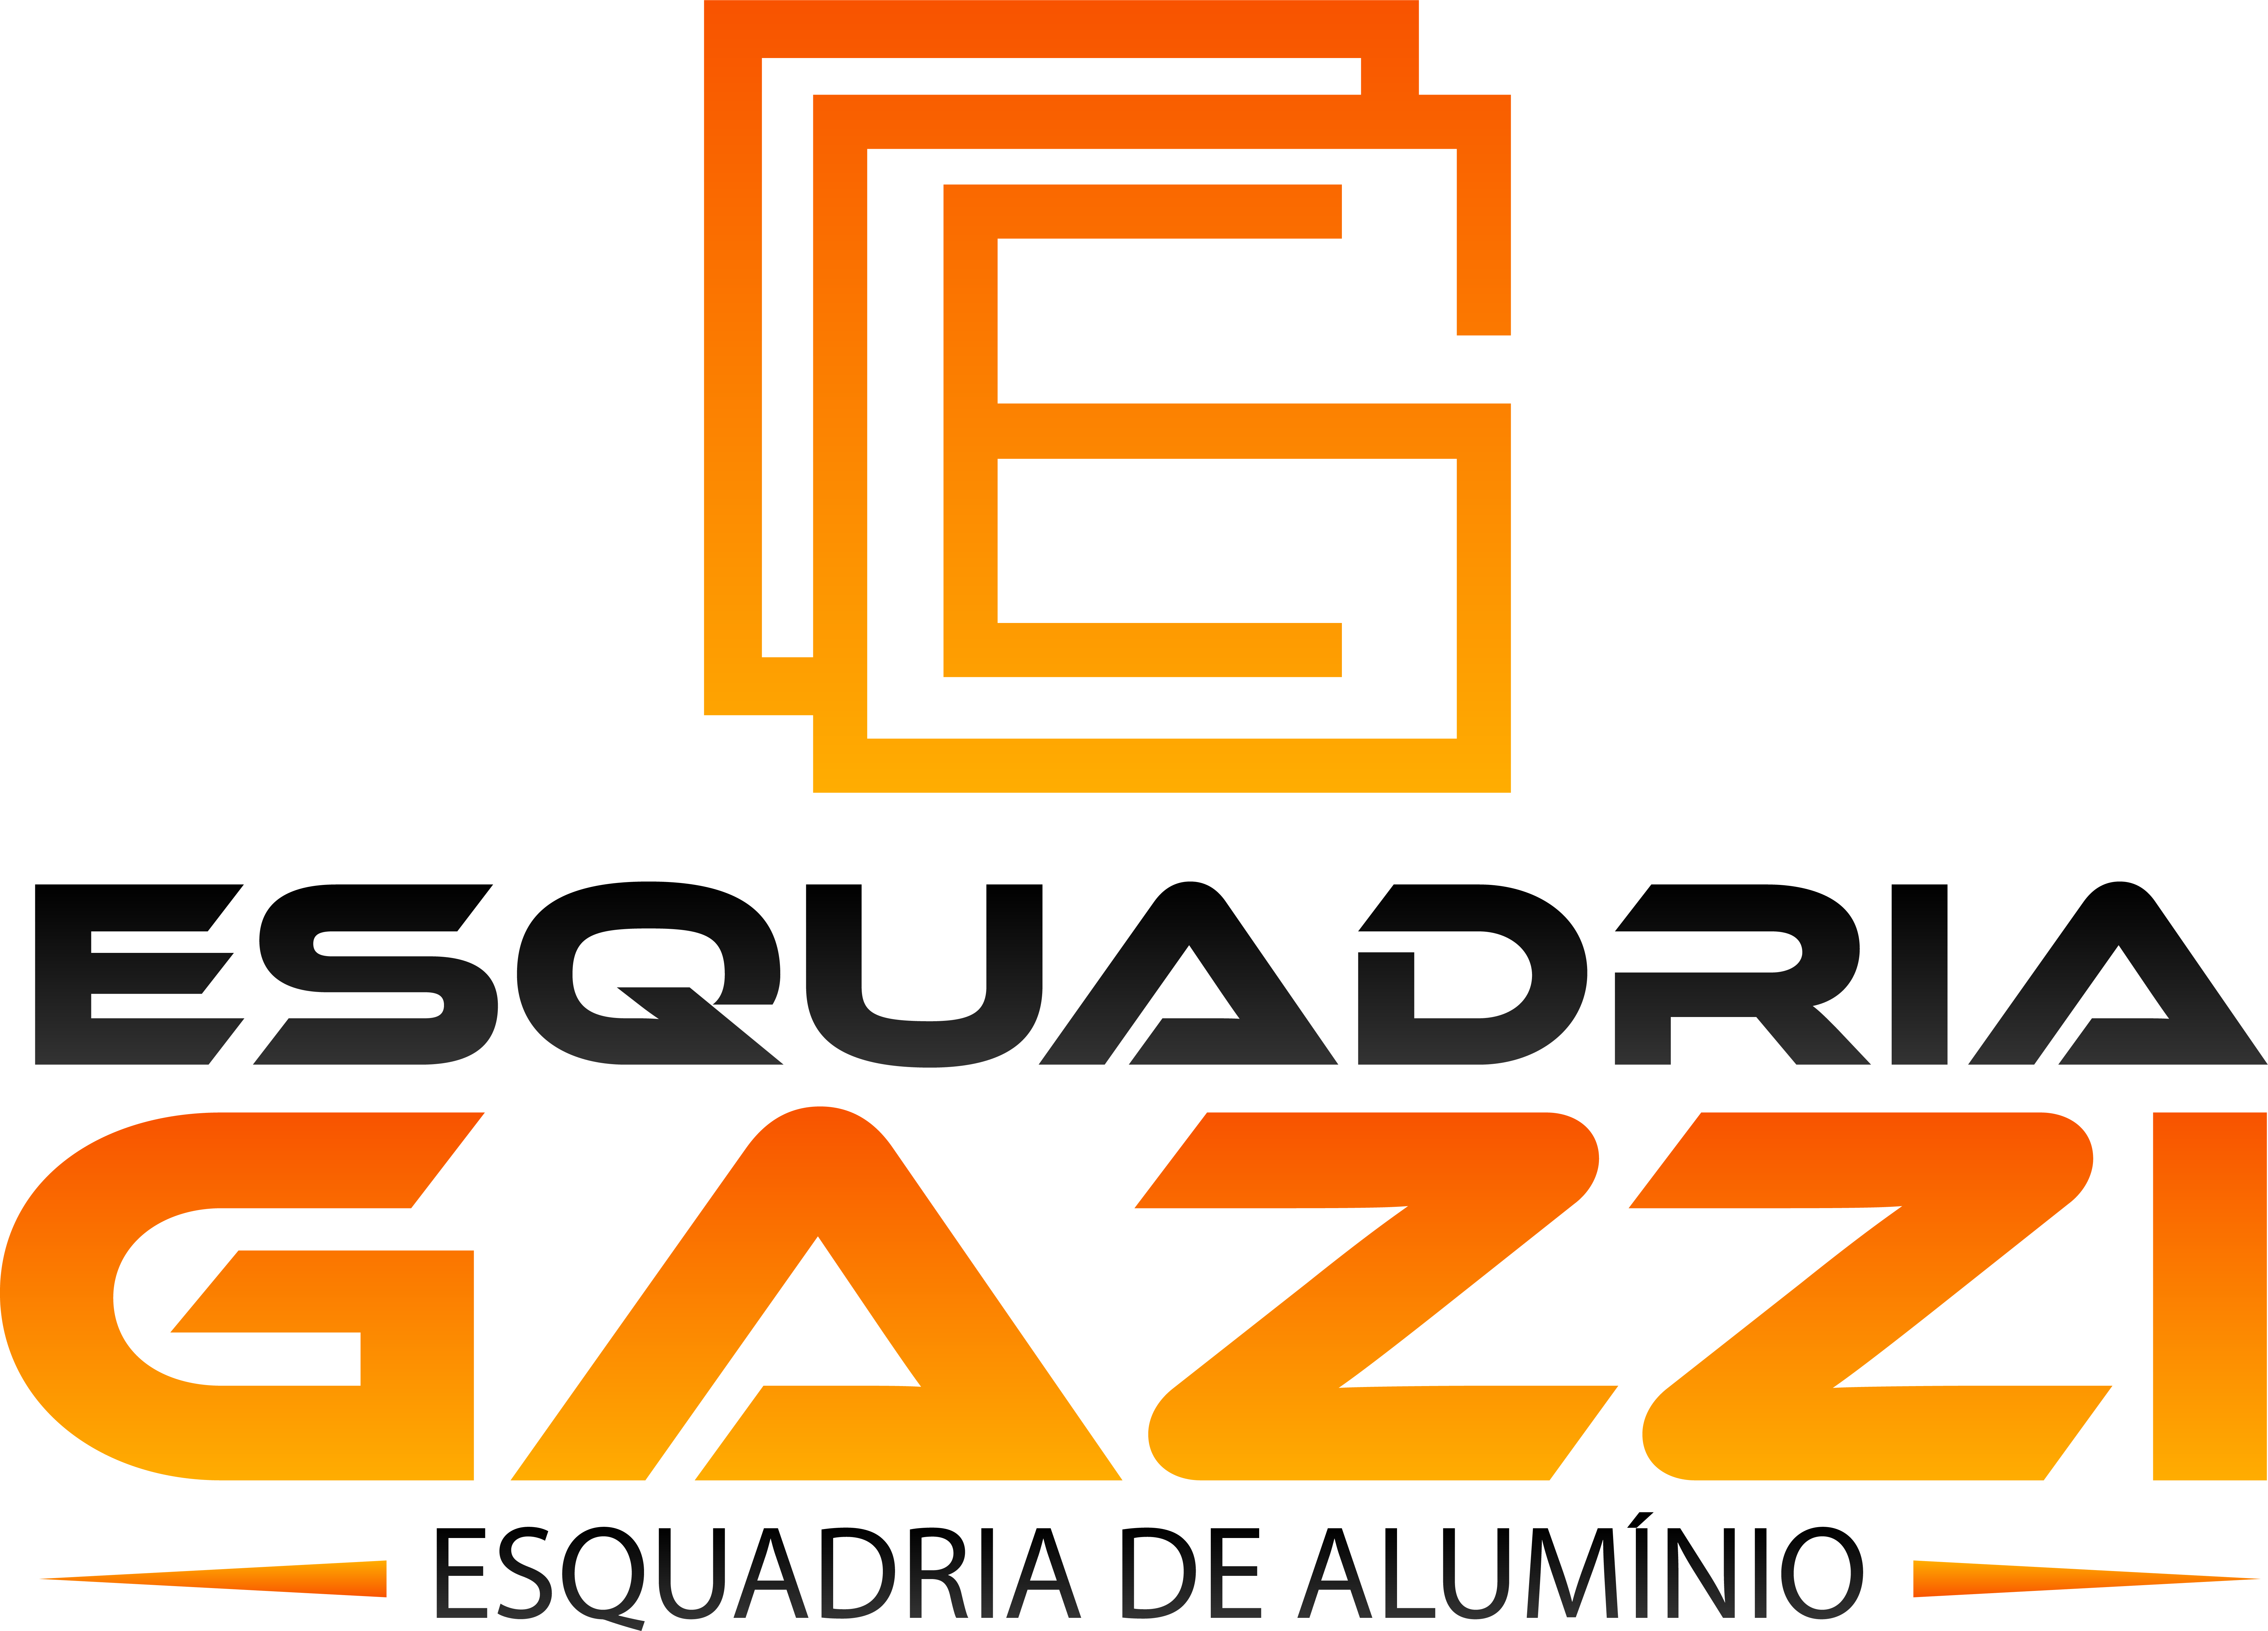 Esquadrias Gazzi - 